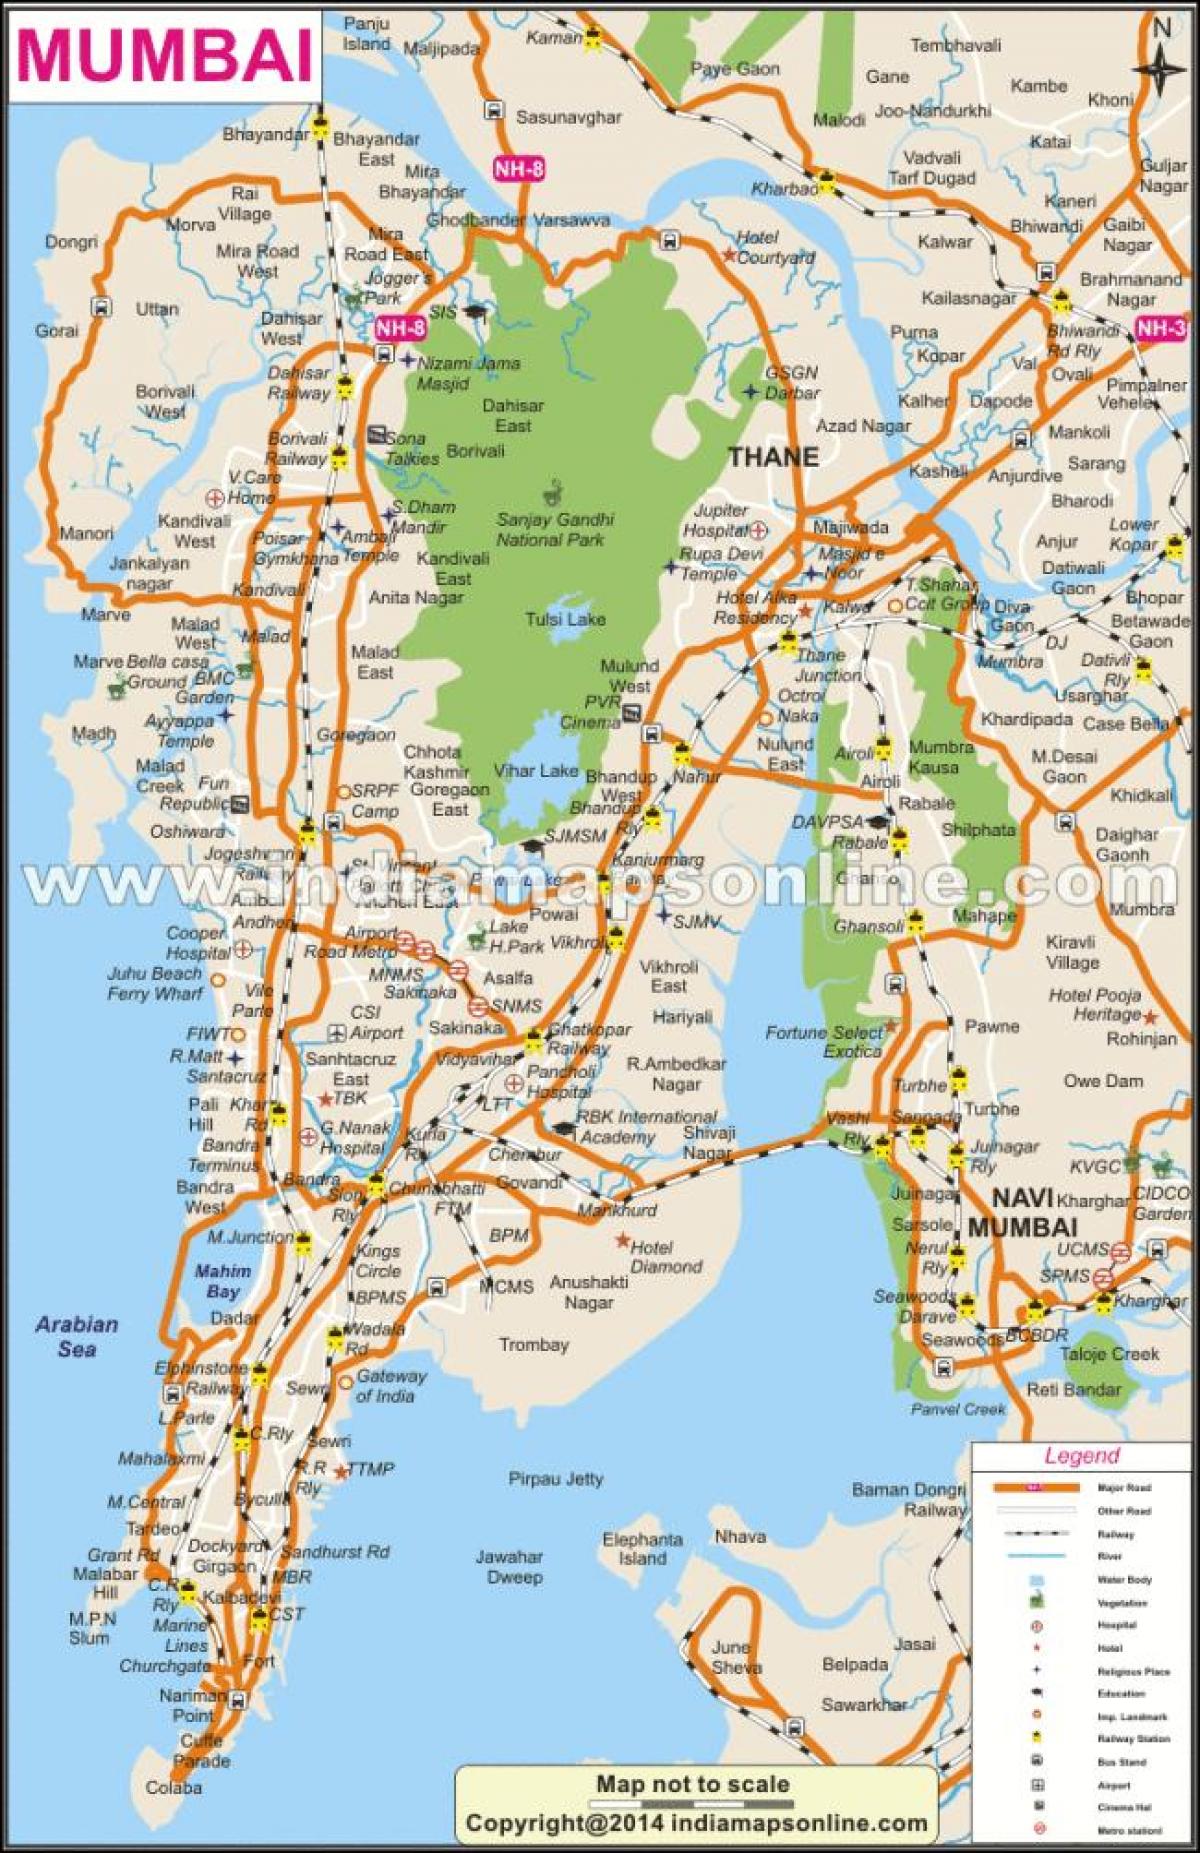 Mumbajus žemėlapyje